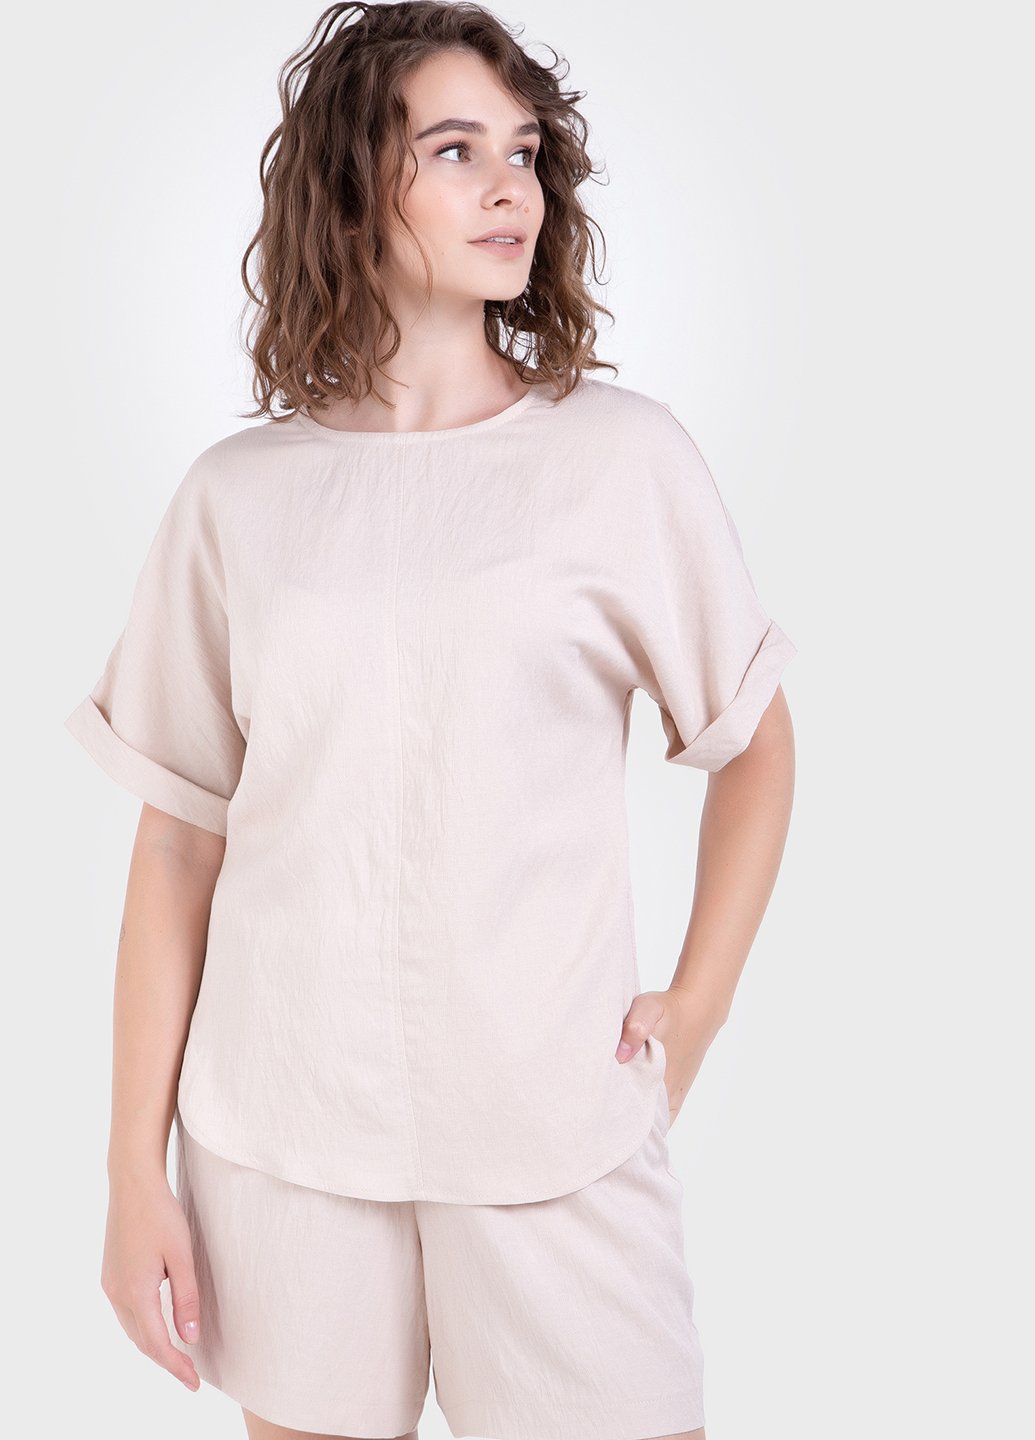 Купить Оверсайз футболка женская бежевого цвета из льна-жатки Merlini Салерно 800000045, размер 42-44 в интернет-магазине